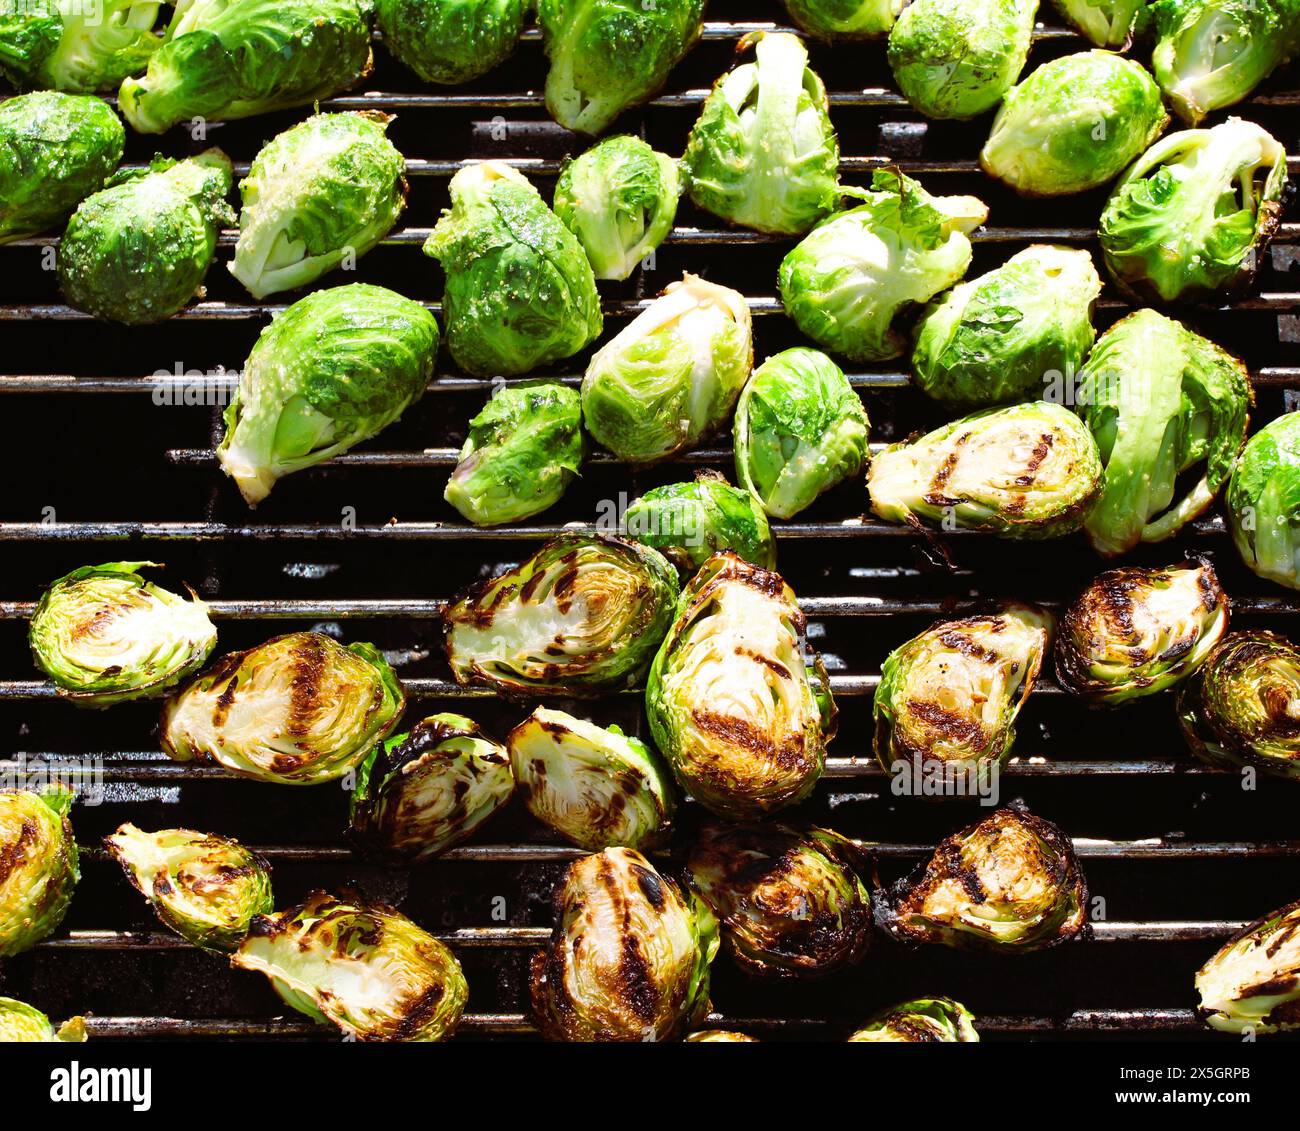 Germogli di Bruxelles alla griglia, verdure affumicate, cibo cucinato, blog sul cibo Foto Stock